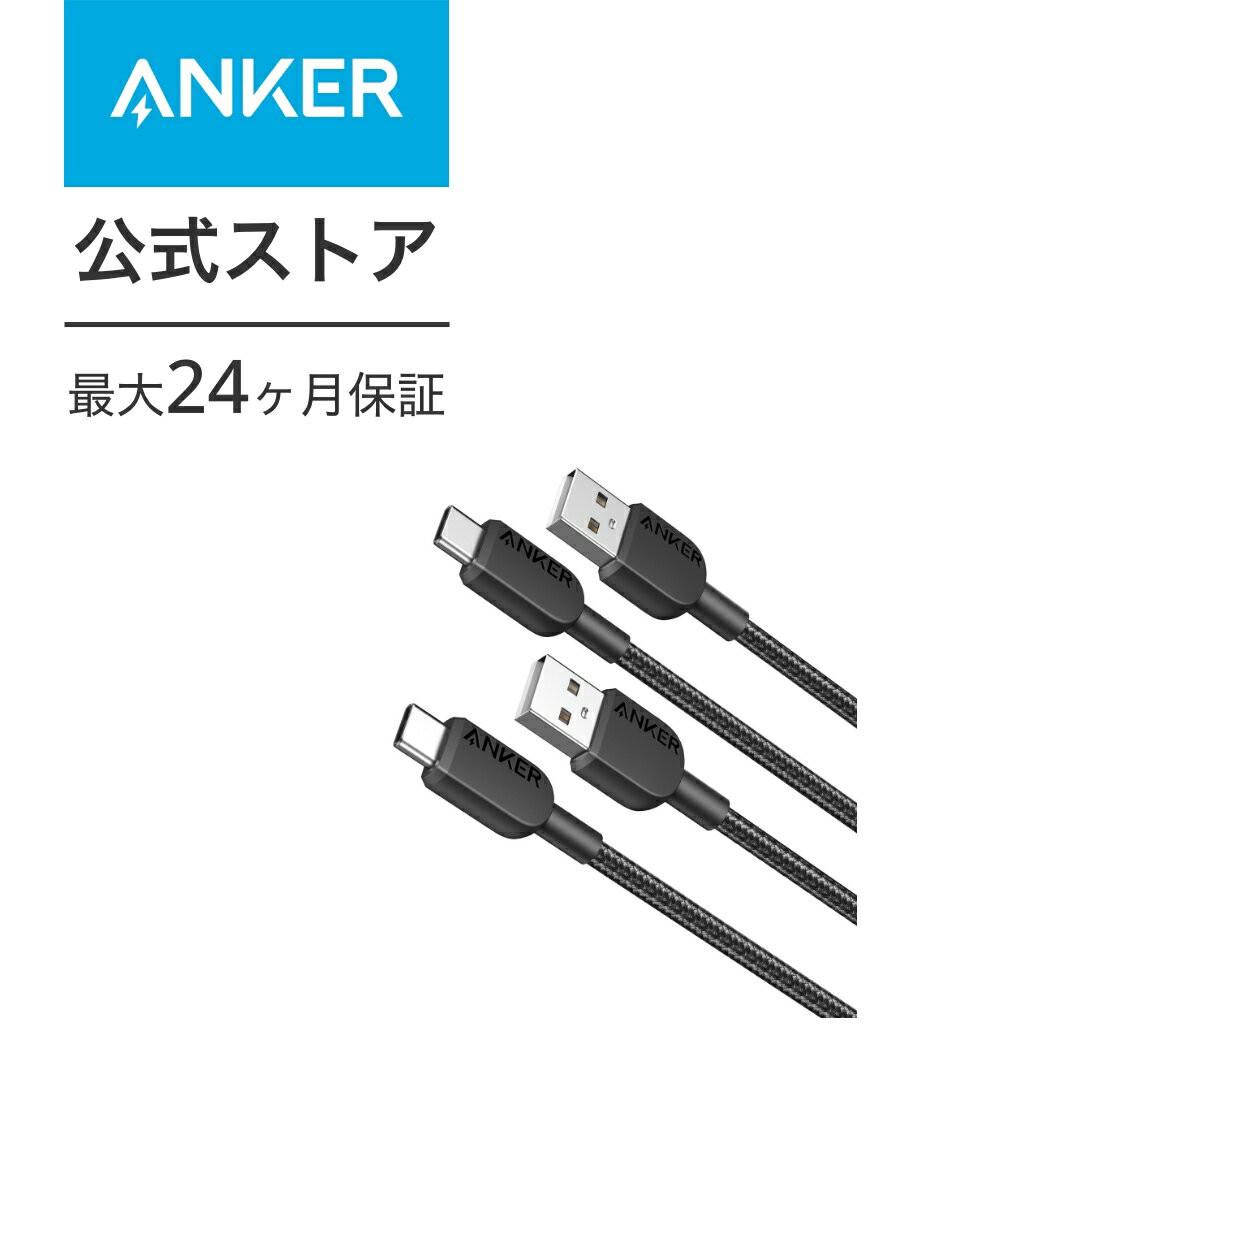 【2本セット】Anker 310 高耐久ナイロン USB-C & USB-A ケーブル USB 2.0 フルスピード充電 Galaxy Note 10 Note 9 / S10+ S10 LG V30各種対応 0.9m 2本セット 